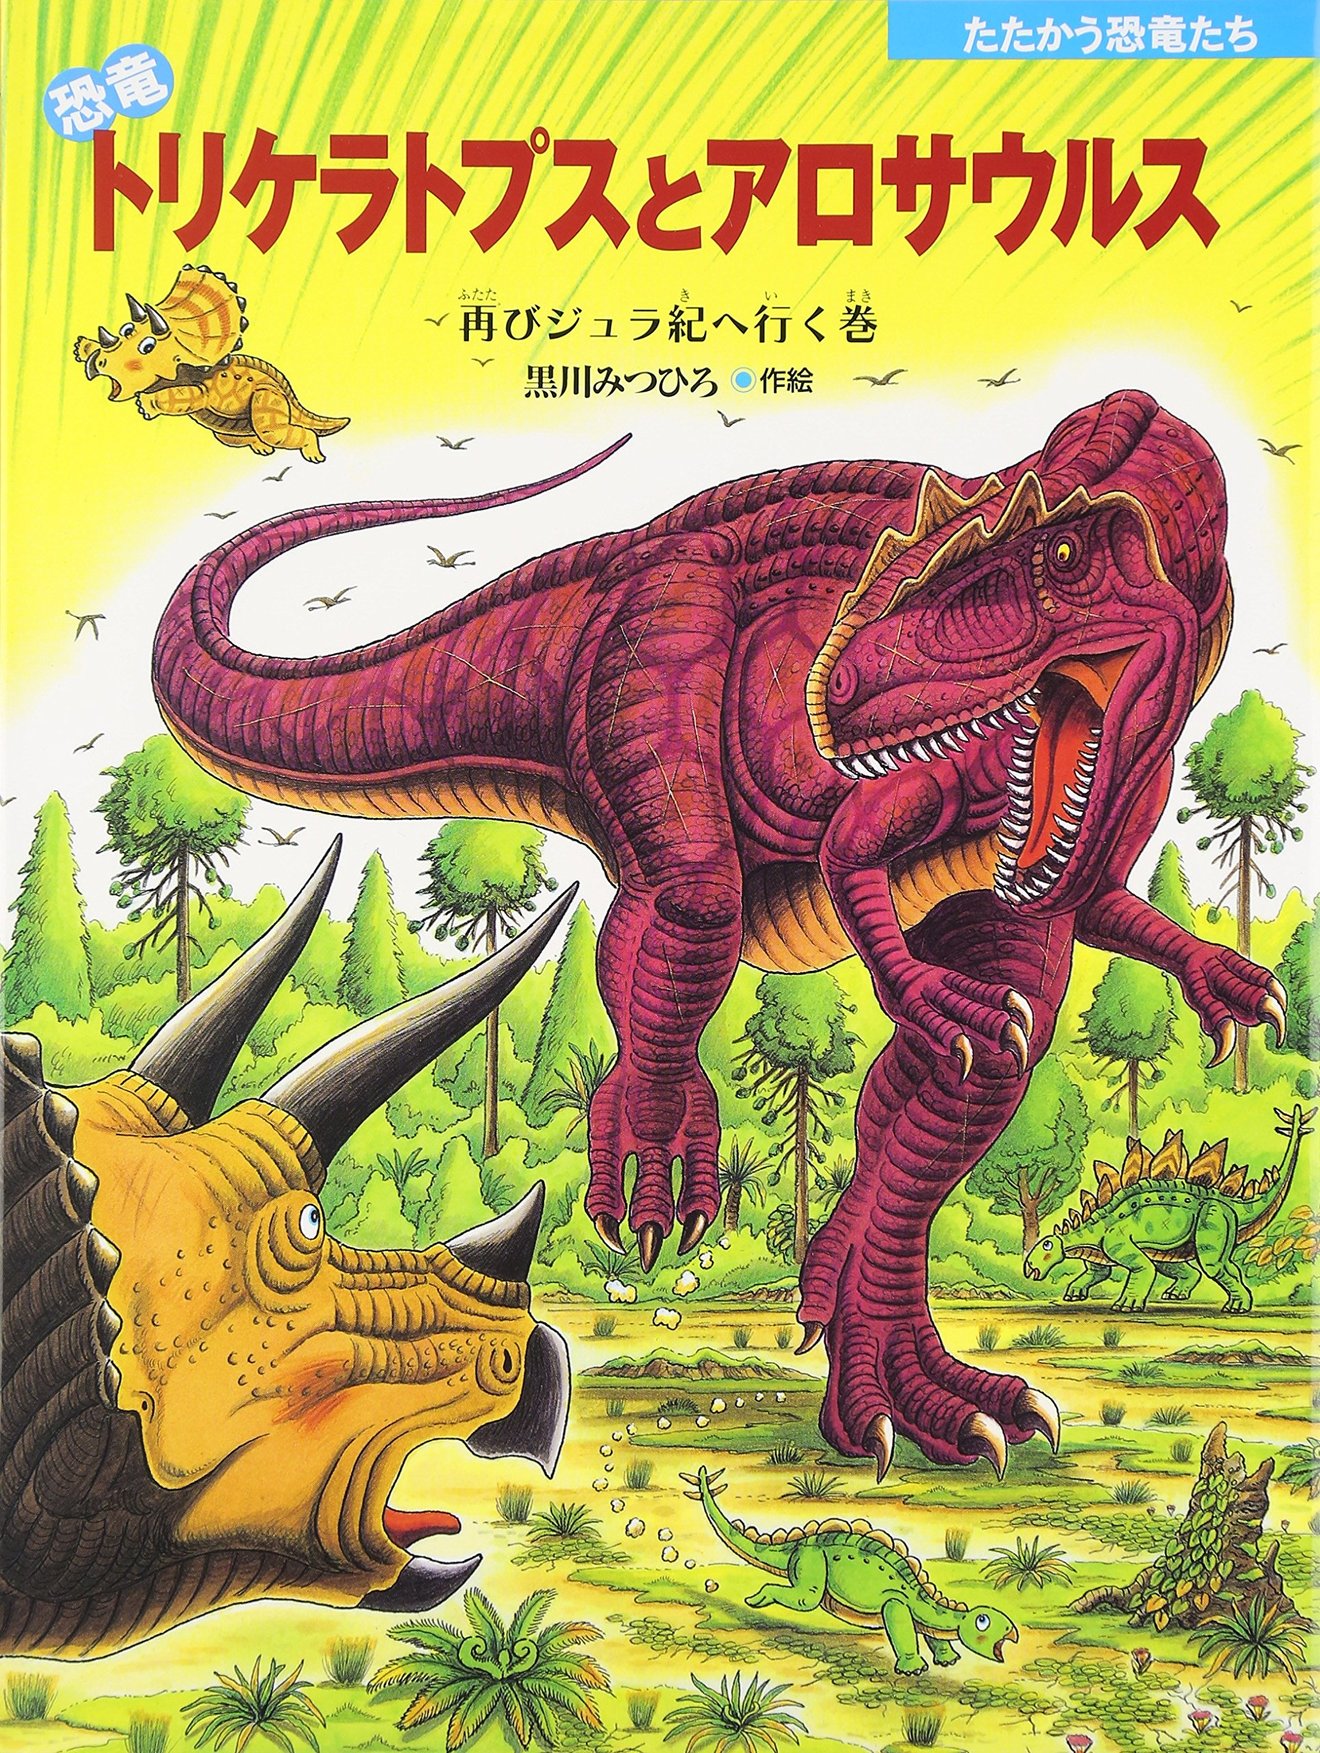 心に強く訴えるかっこいい 恐竜 骨 イラスト スーパーイラストコレクション